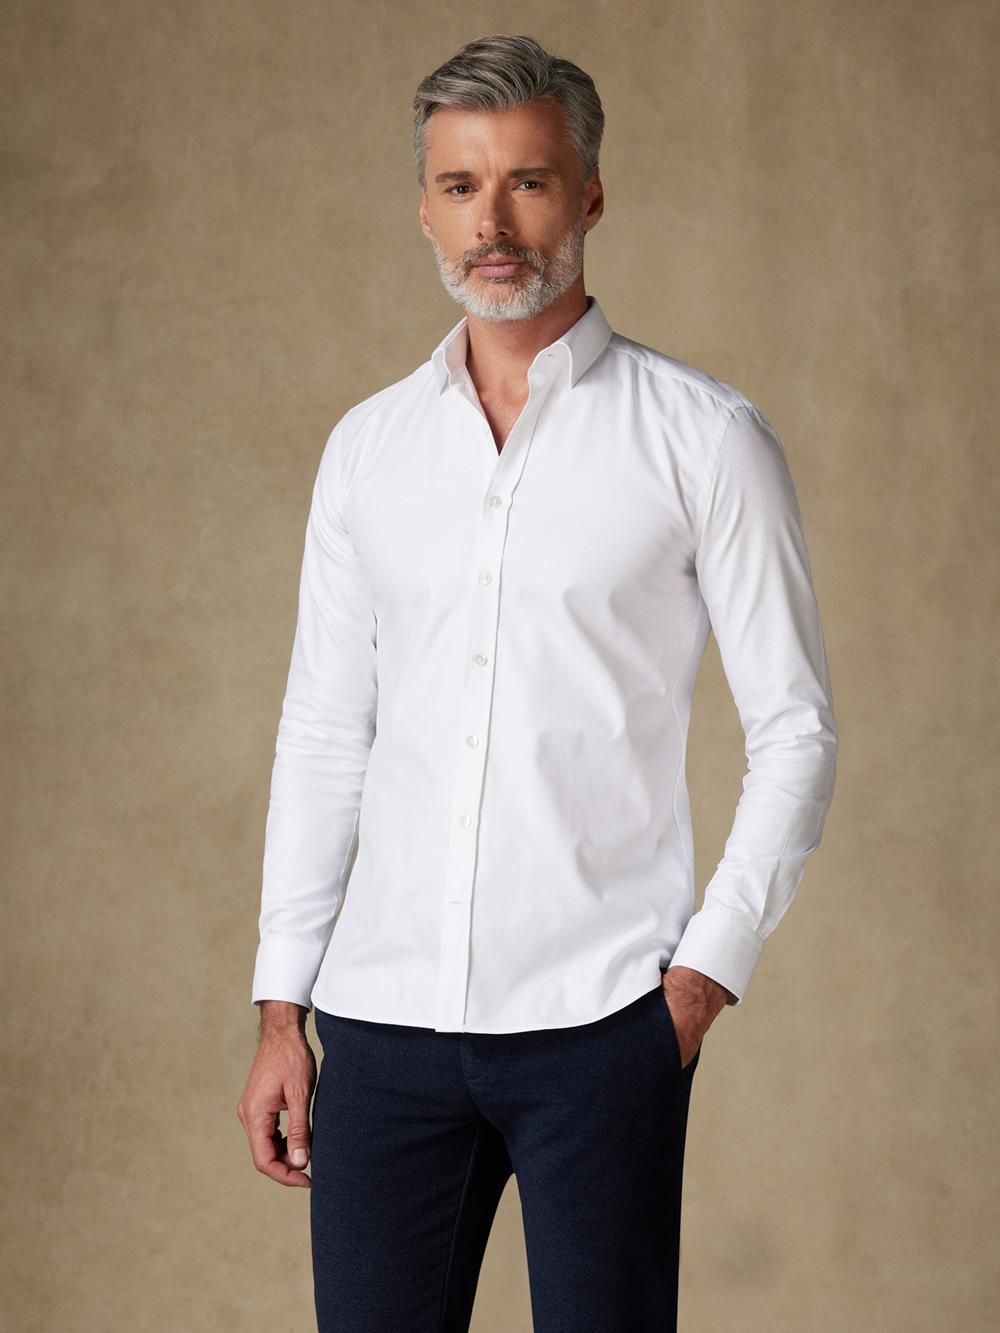 Royal white oxford shirt